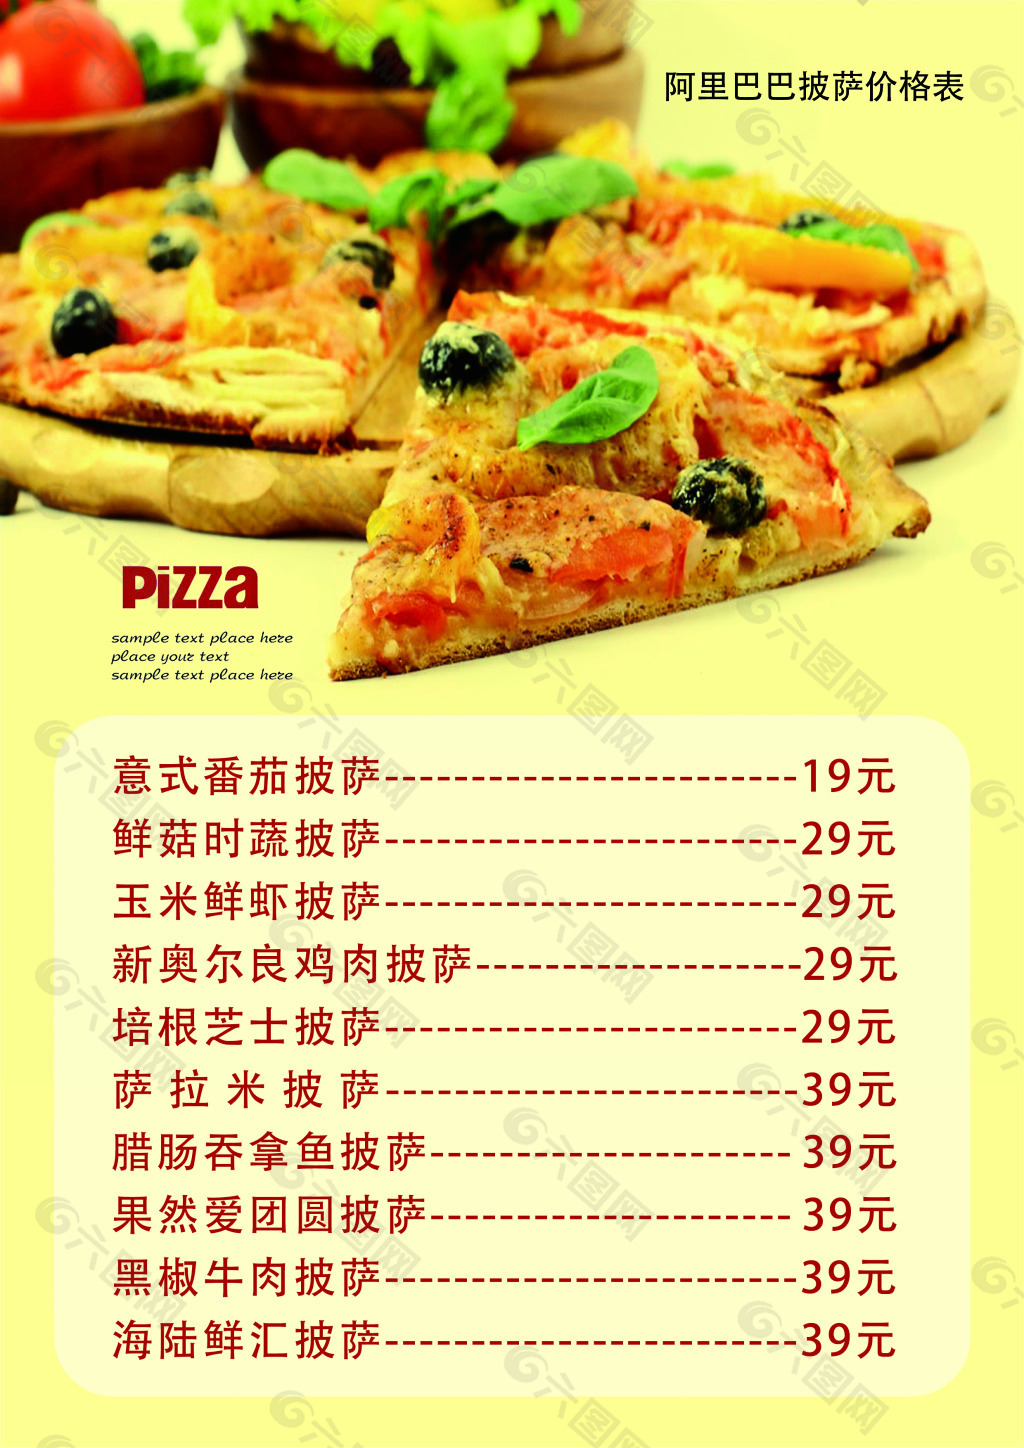 阿里巴巴披萨菜单价格表